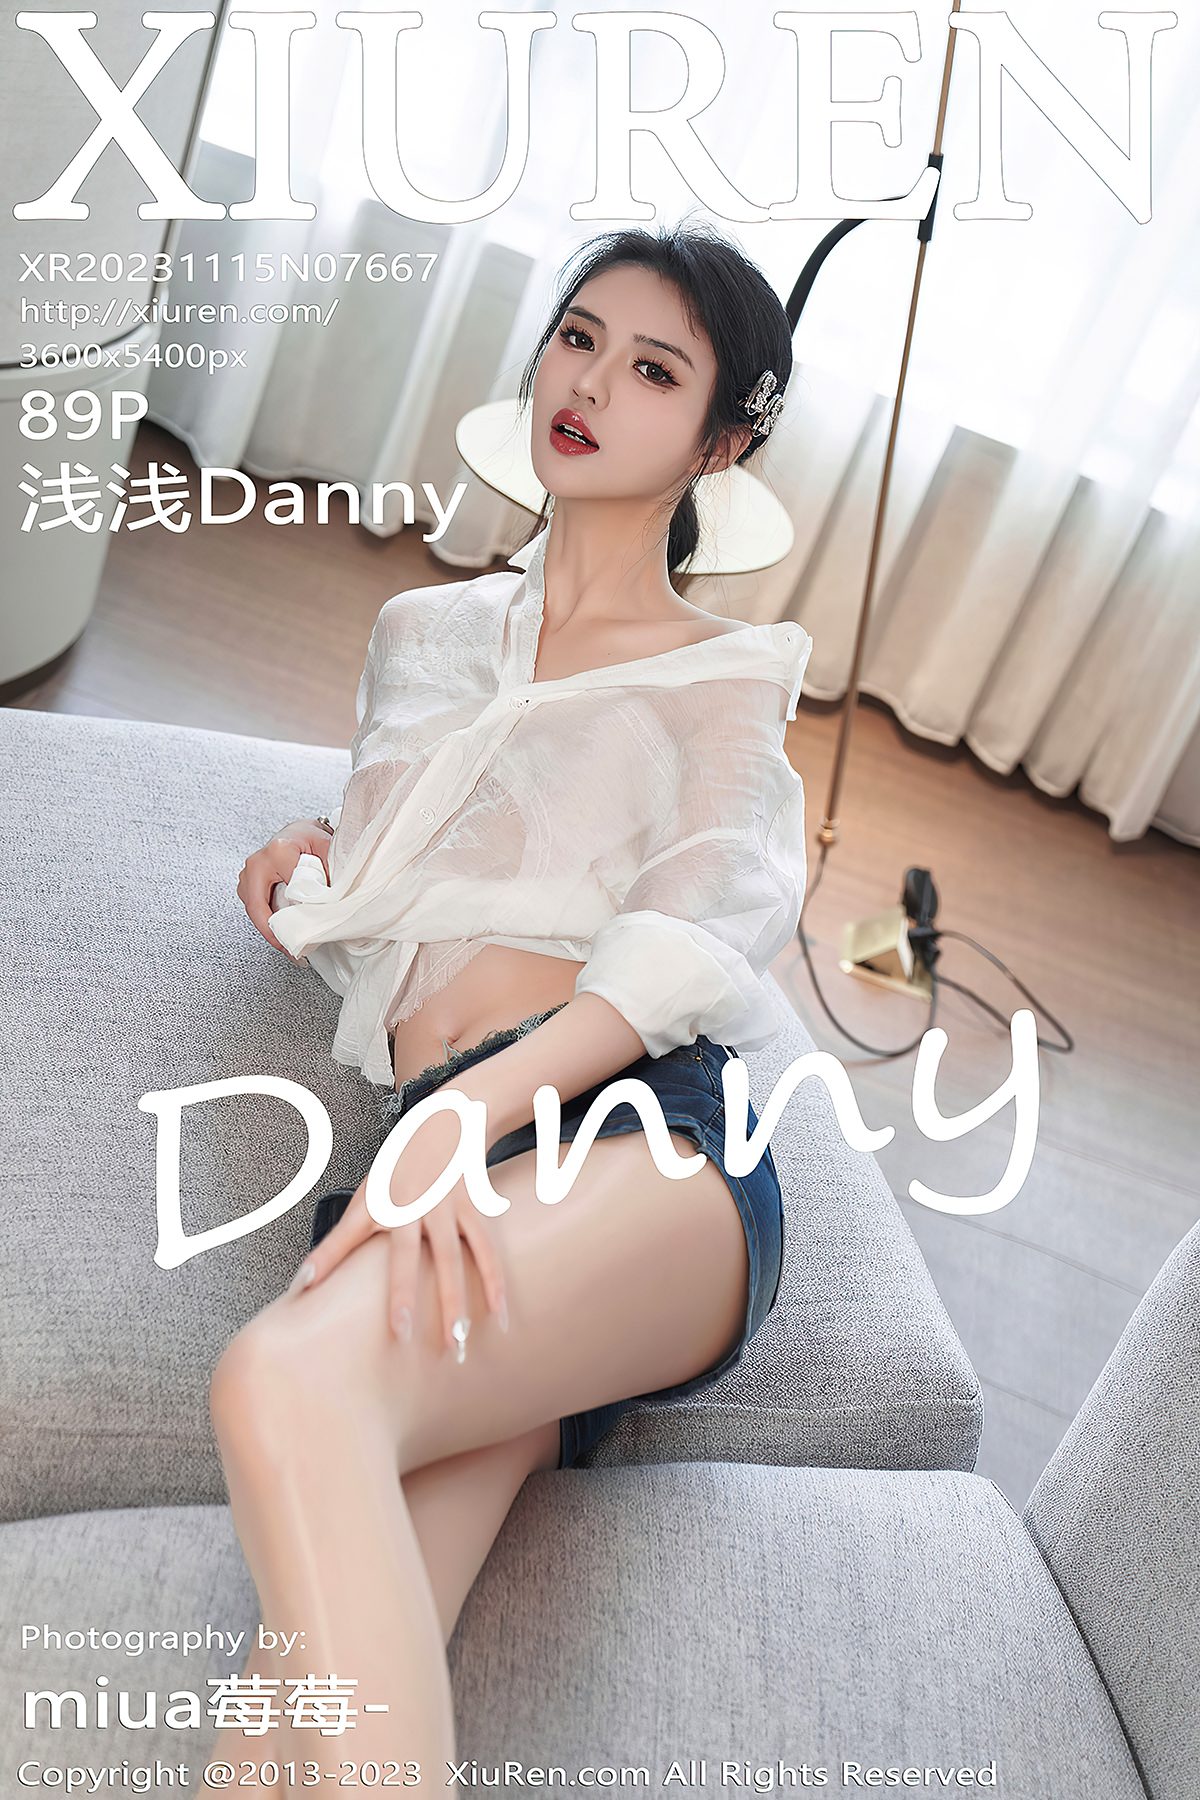 XiuRen秀人网 No.7667 Qian Qian Danny